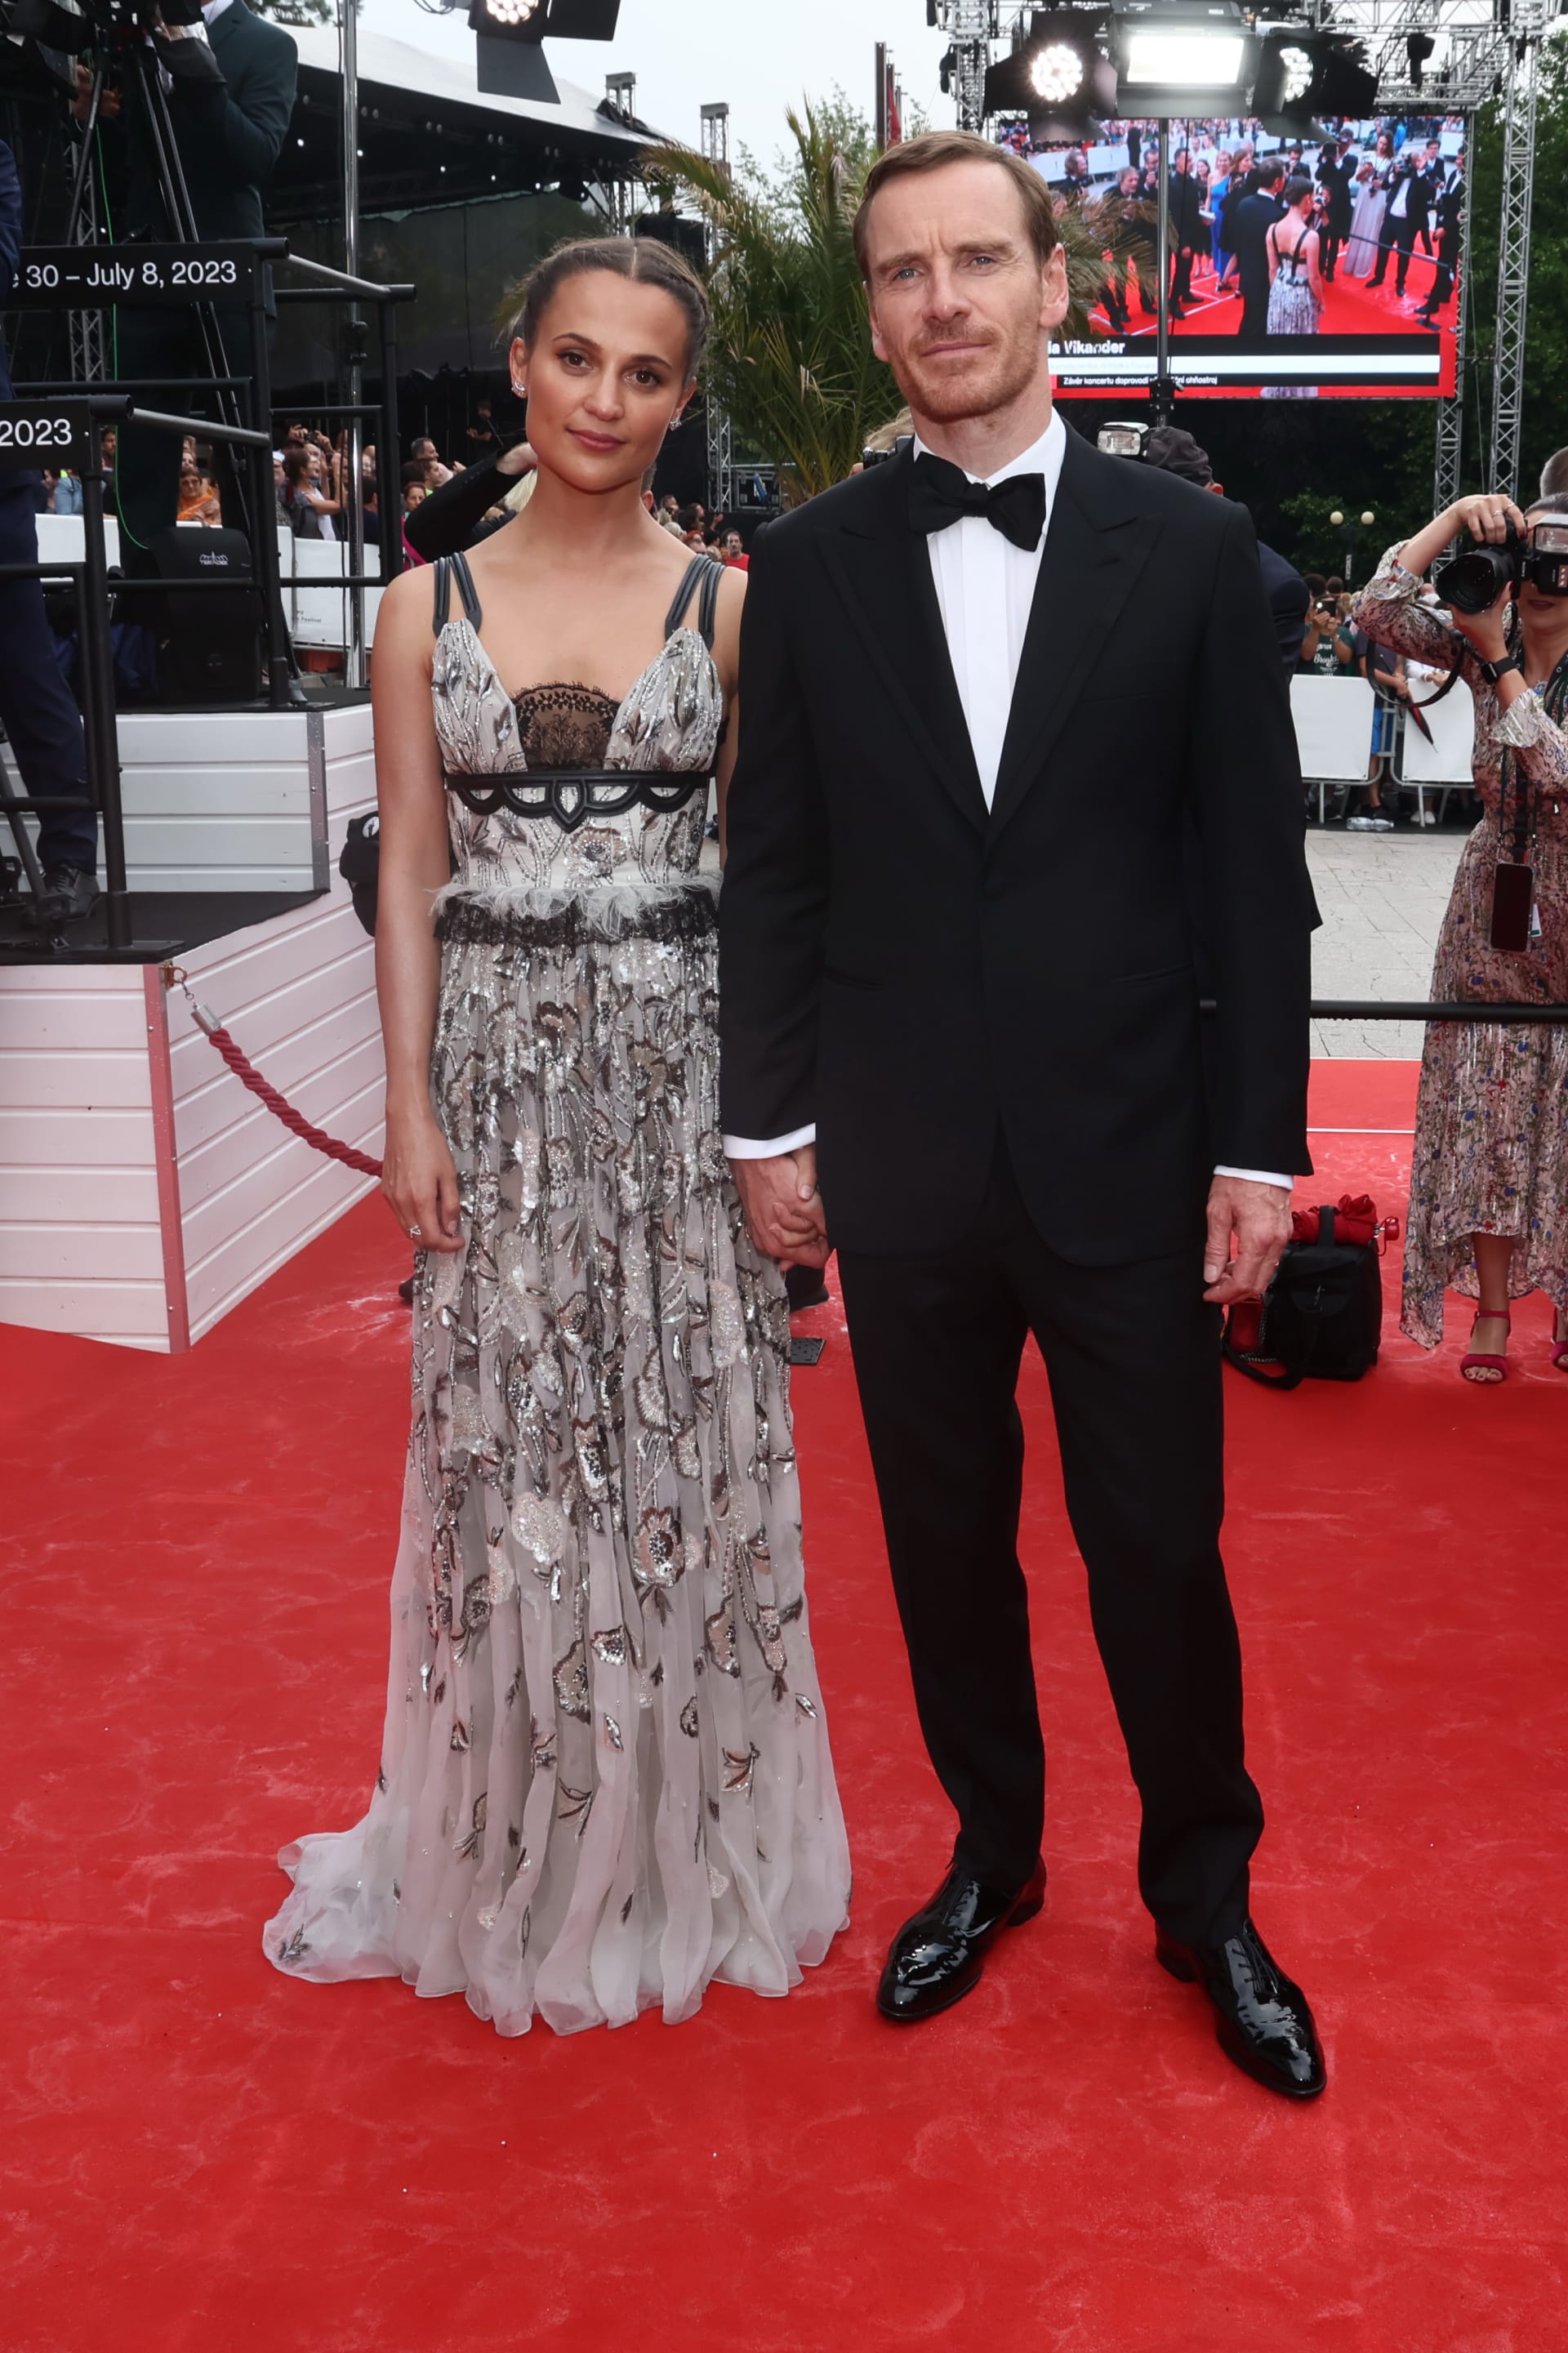 Švédská herečka Alicia Vikander dorazila nečekaně i se svým manželem, slavným hollywoodským hercem Michaelem Fassbenderem.